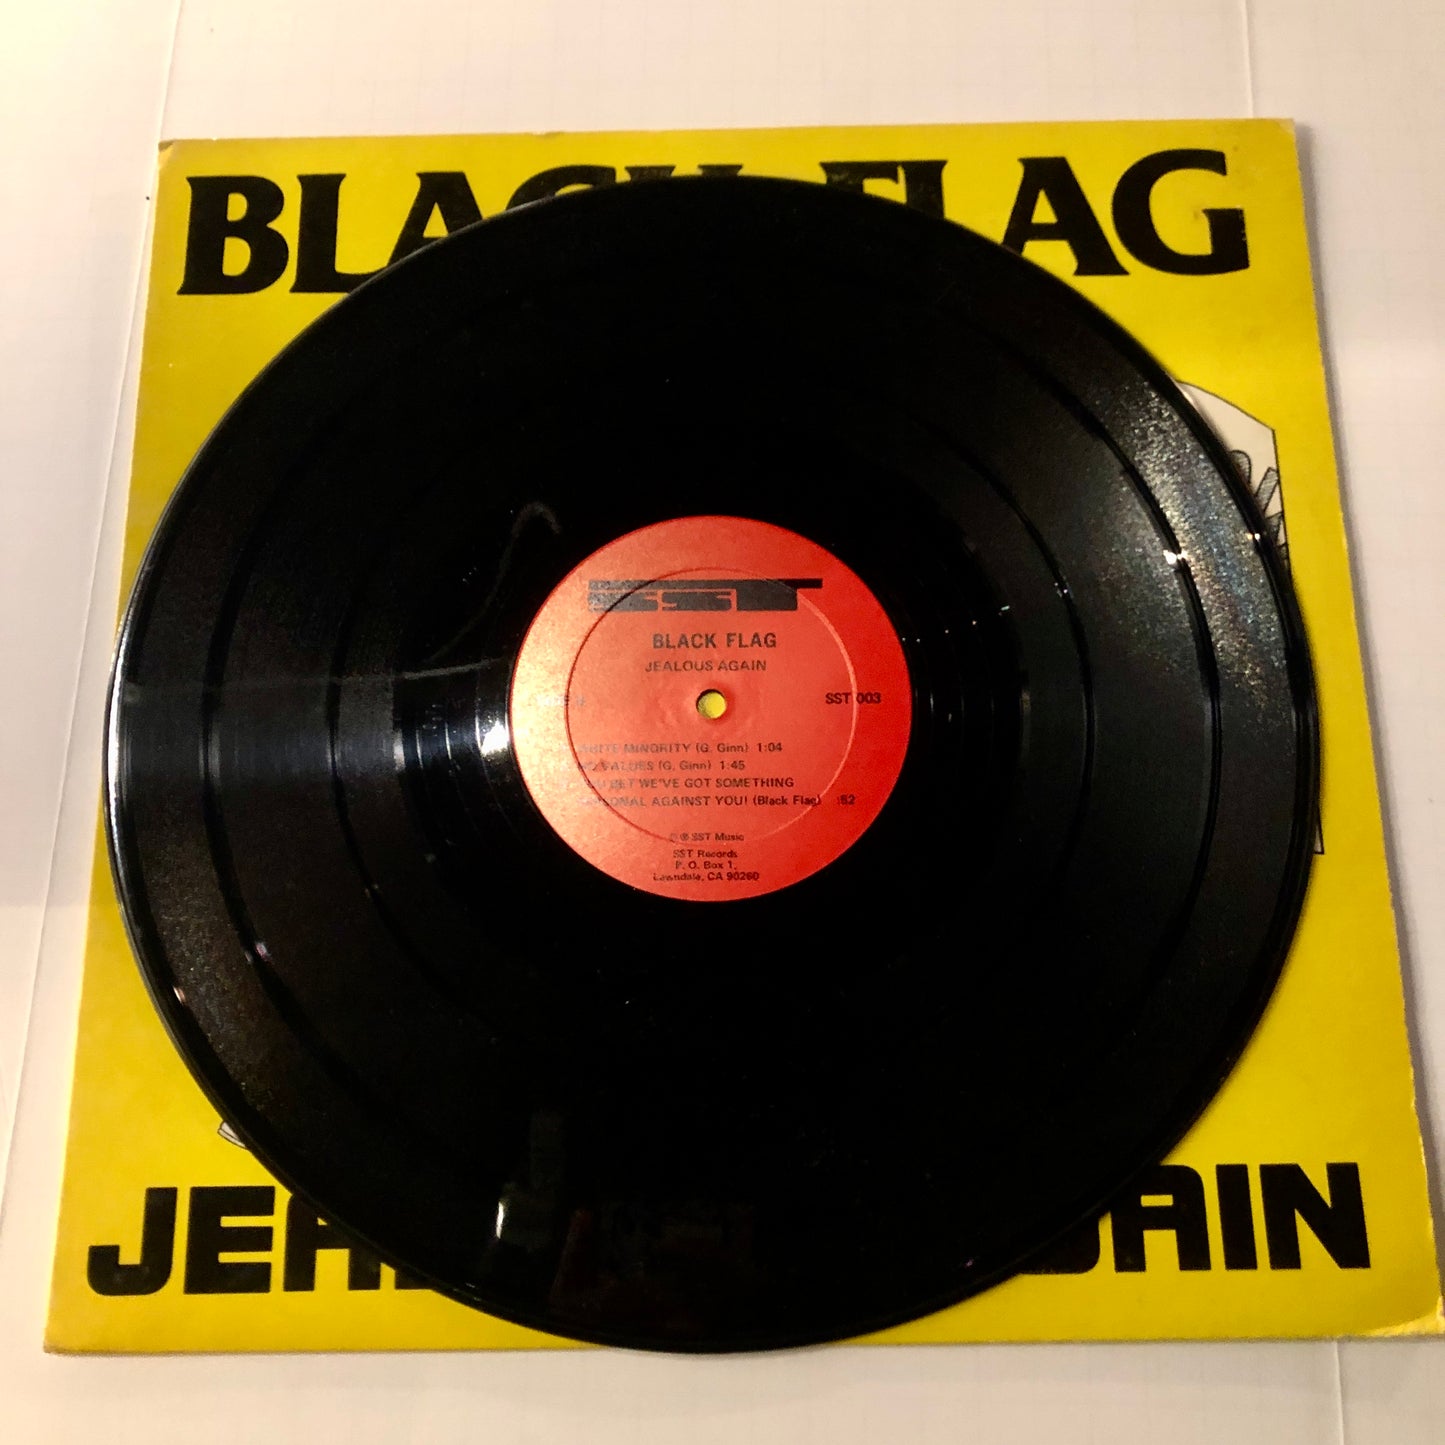 Black Flag “Jealous Again” 12” EP